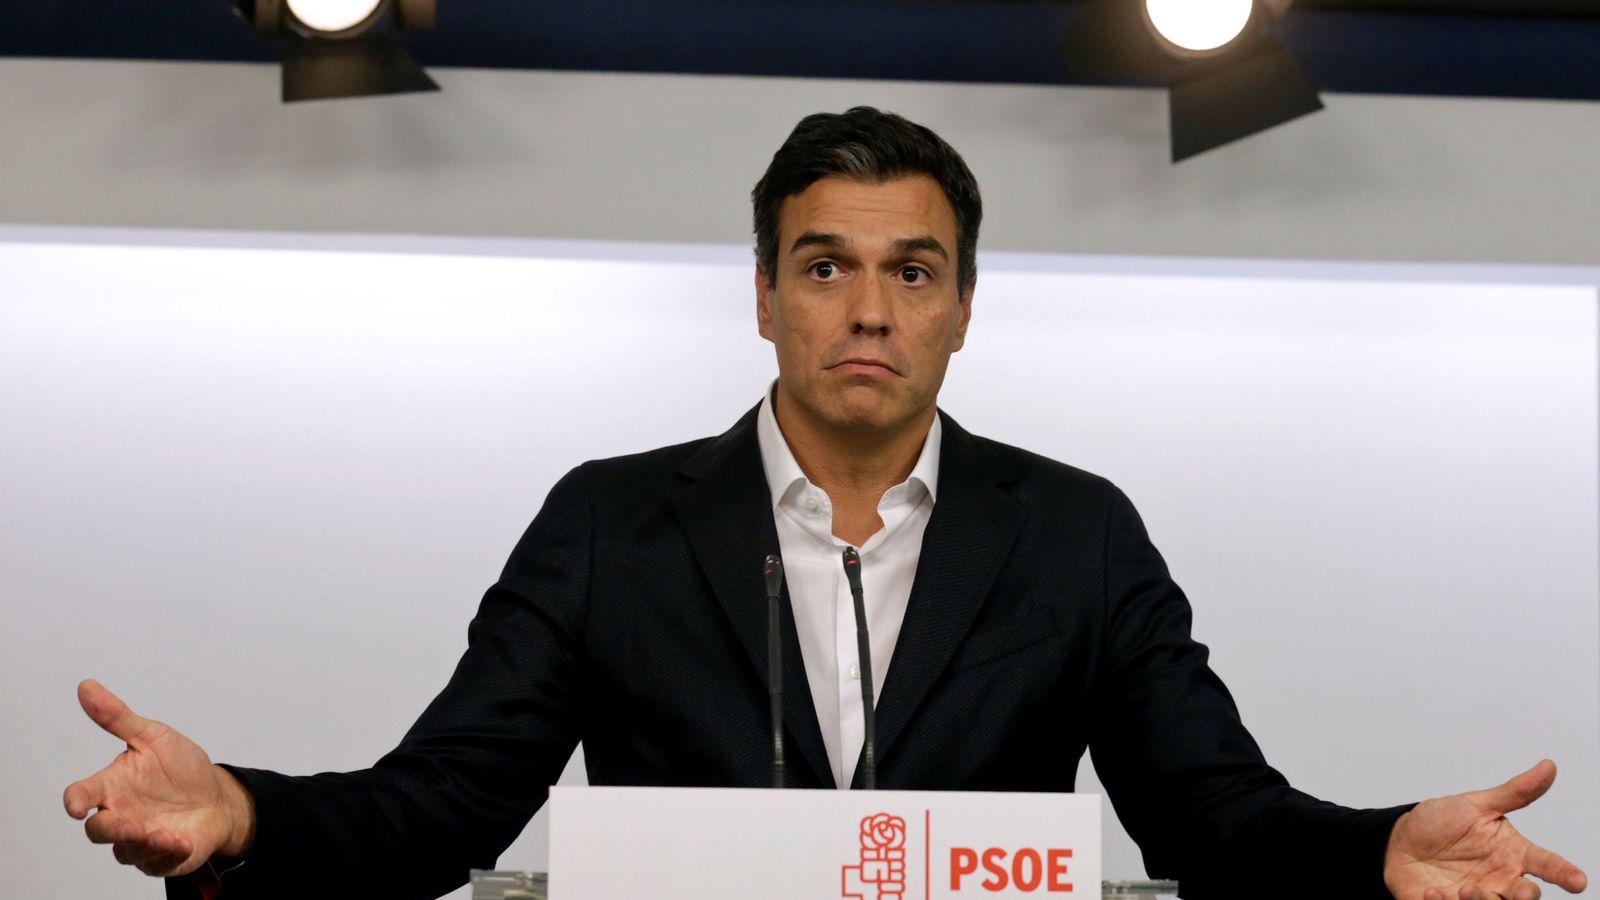 Foto: El líder socialista Pedro Sánchez durante una rueda de prensa. (Reuters)